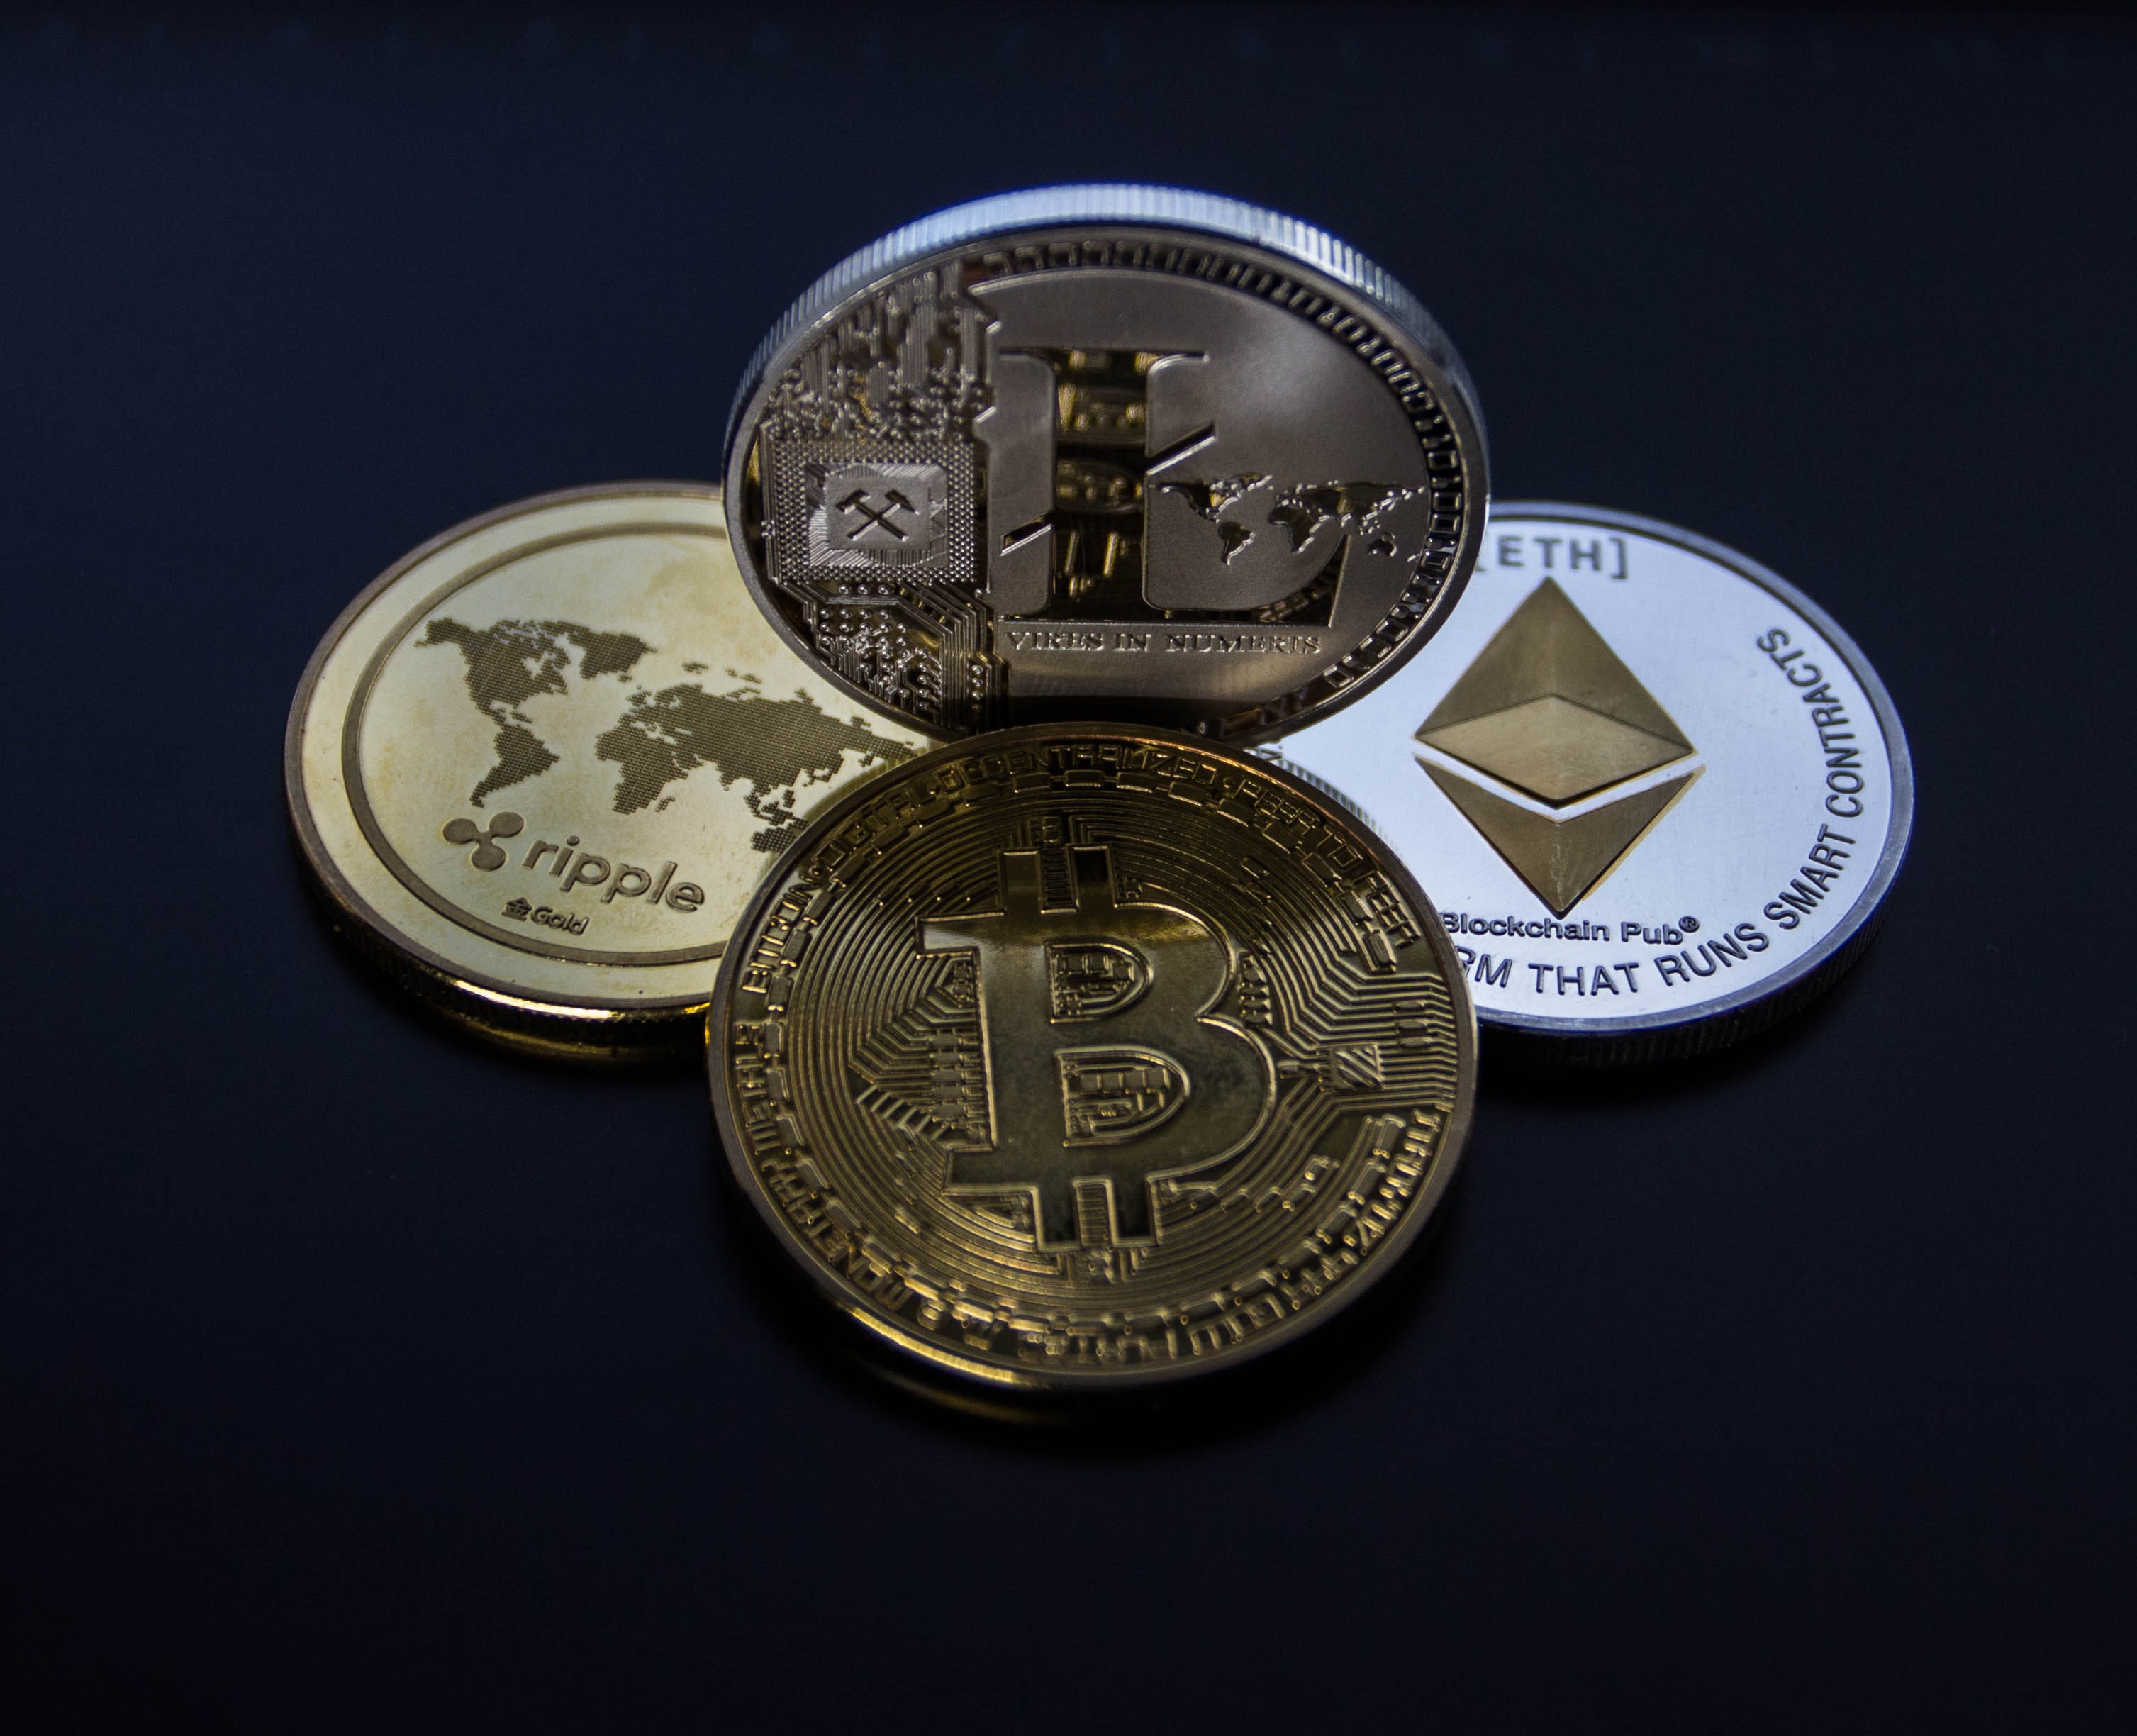 initial exchange offering token minting